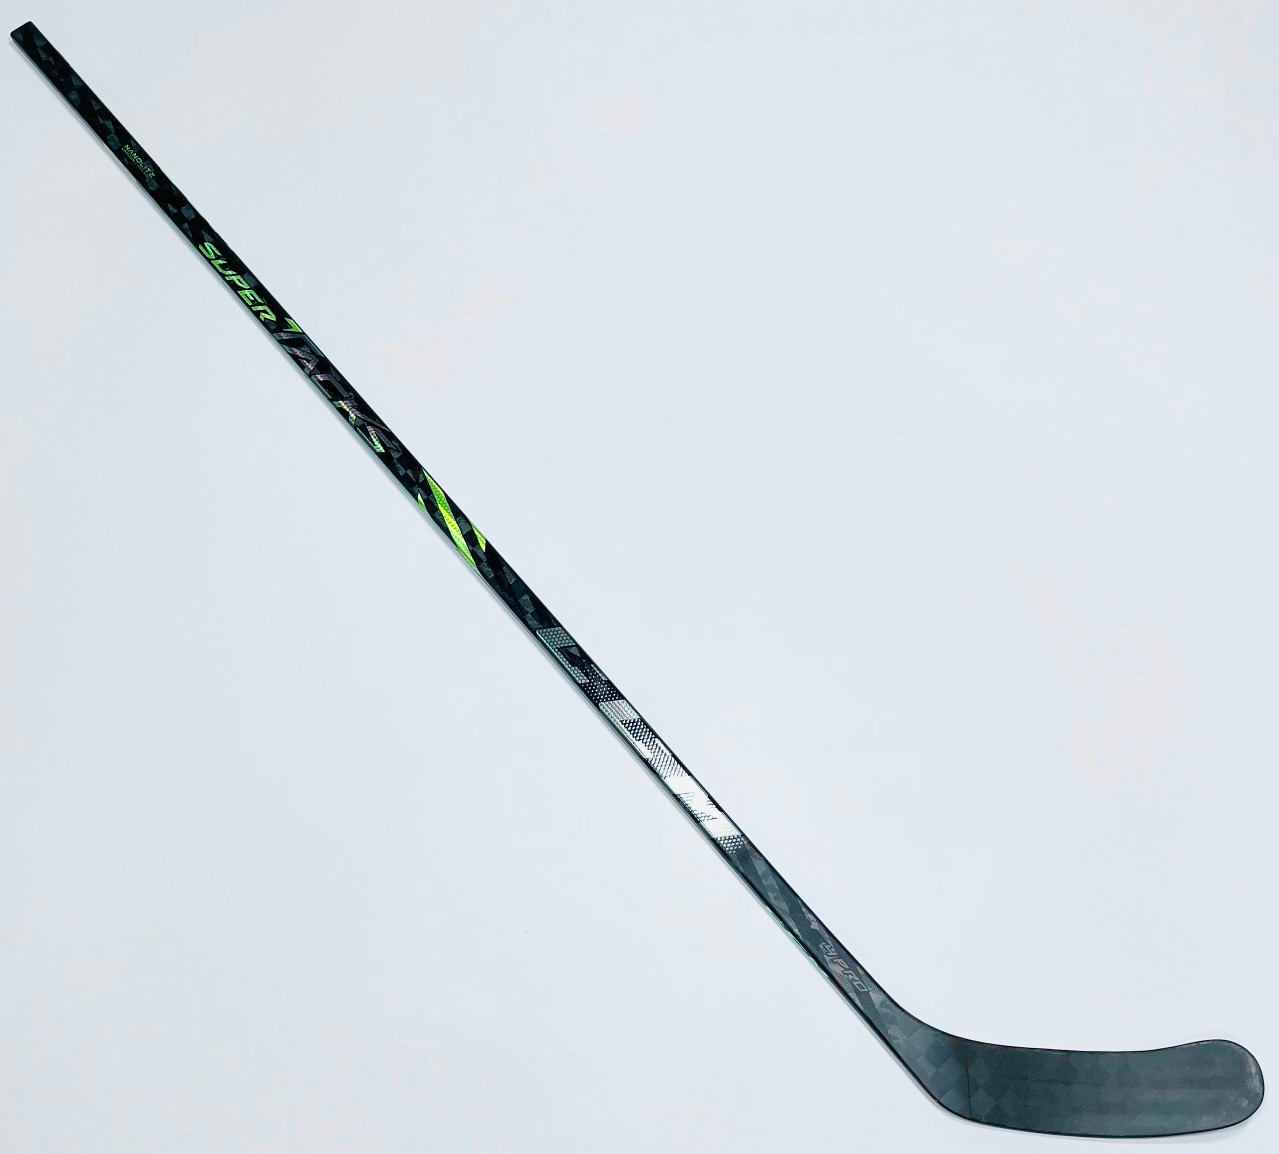 New CCM Supertacks AS4 Pro Hockey Stick-LH-80 Flex-P90M-Grip W/ Bubble Texture